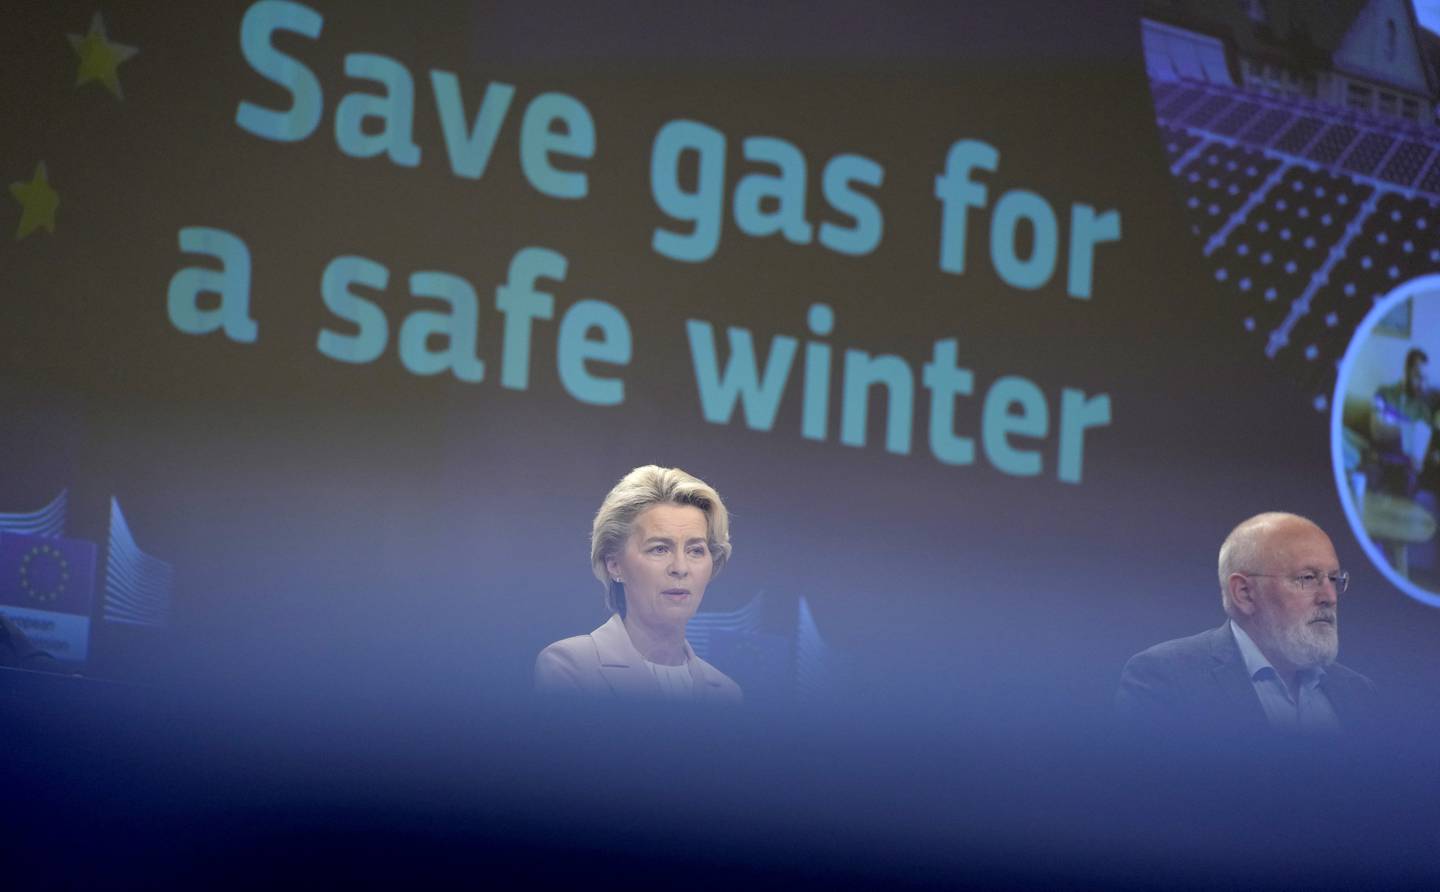 I fjor var gass og sparing et viktig budskap i EU. Unionen foreslo at alle medlemslandene skulle kutte gassbruken med 15 prosent.